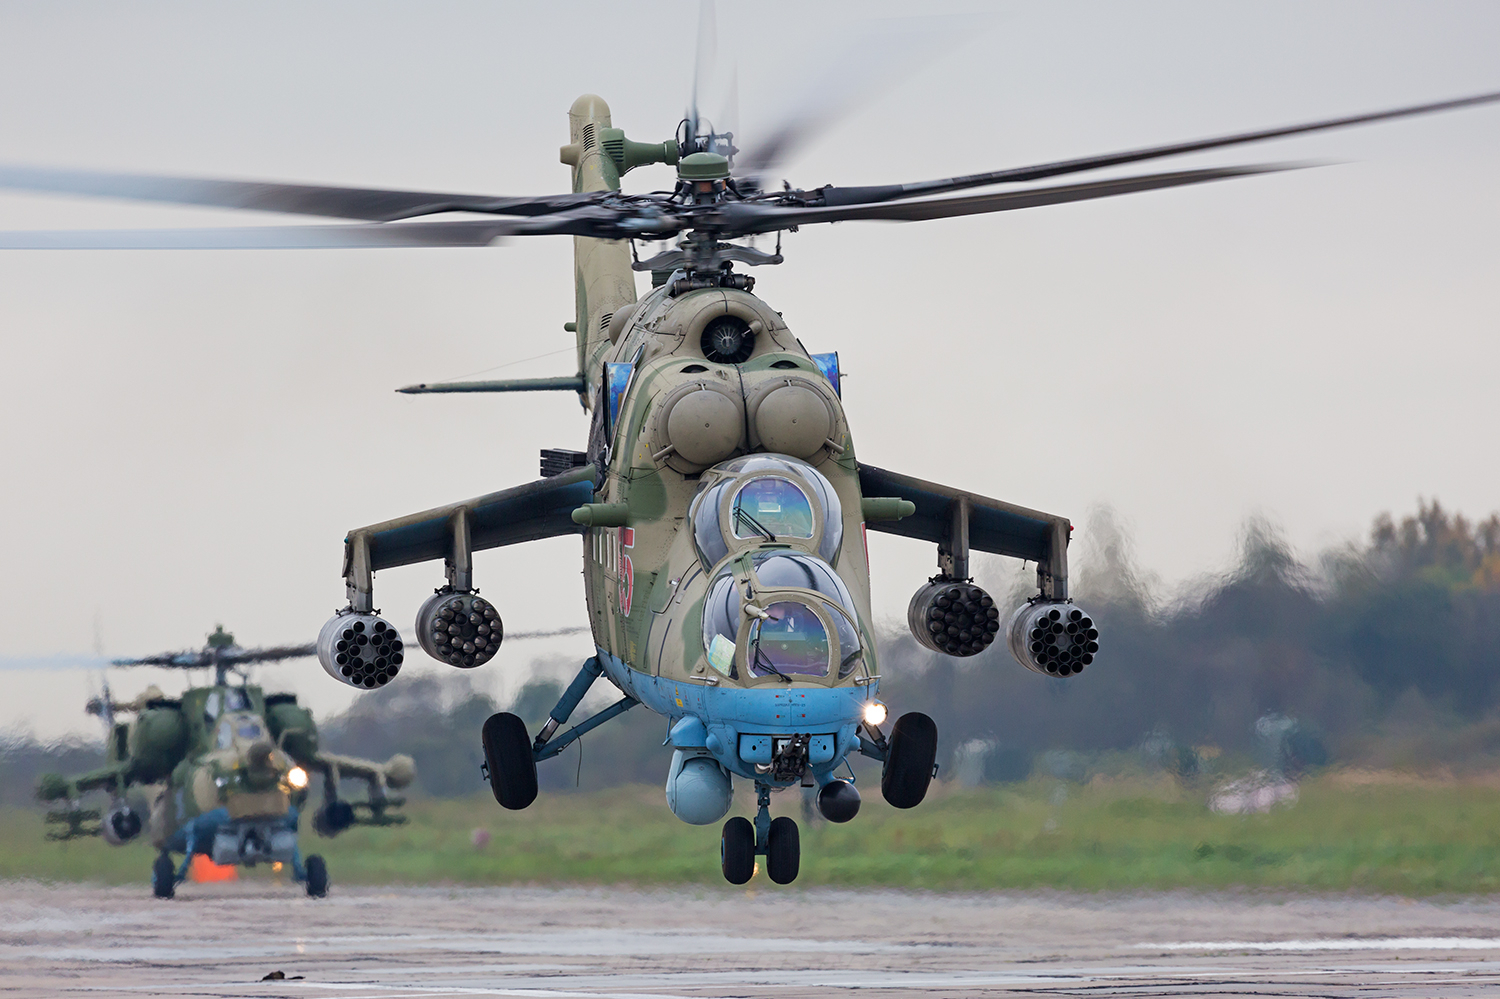 Mynd: Mi-24 tekur af stað